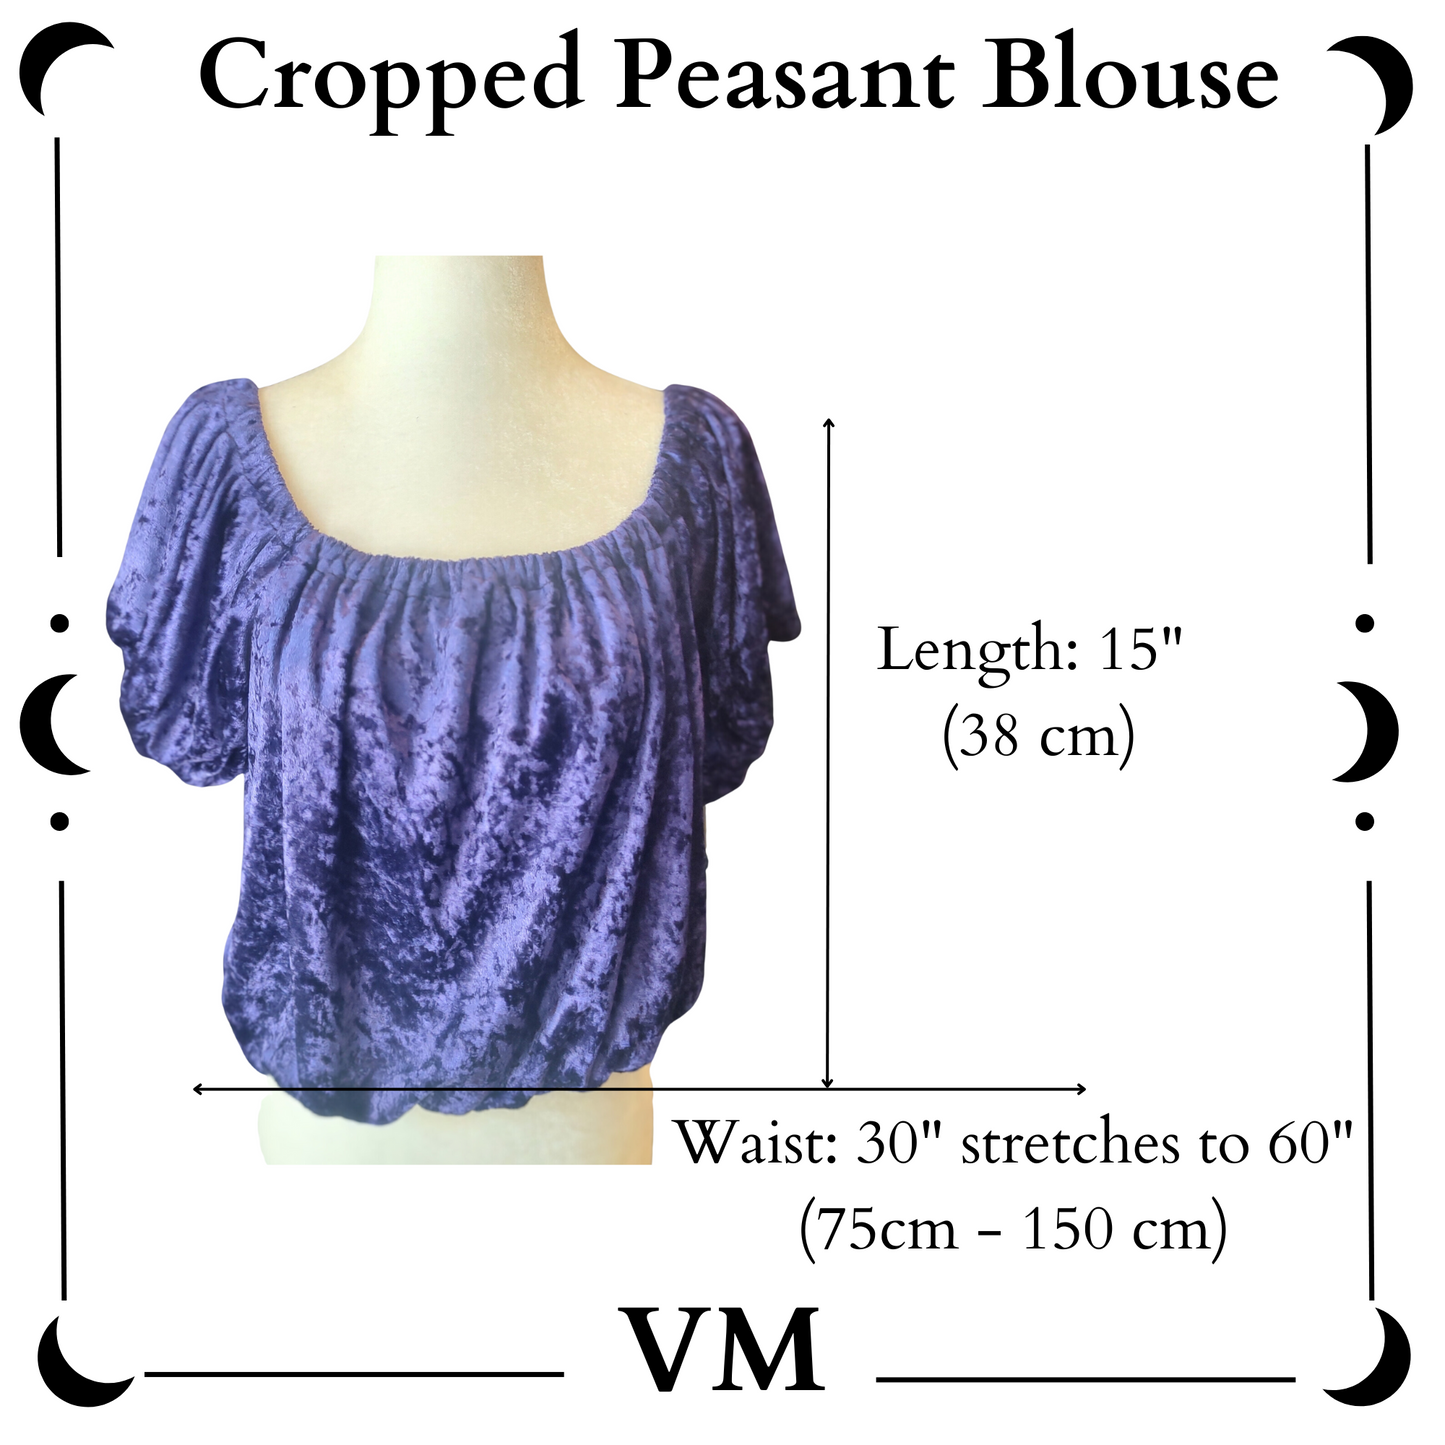 The VM Cropped Velvet Peasant Blouse